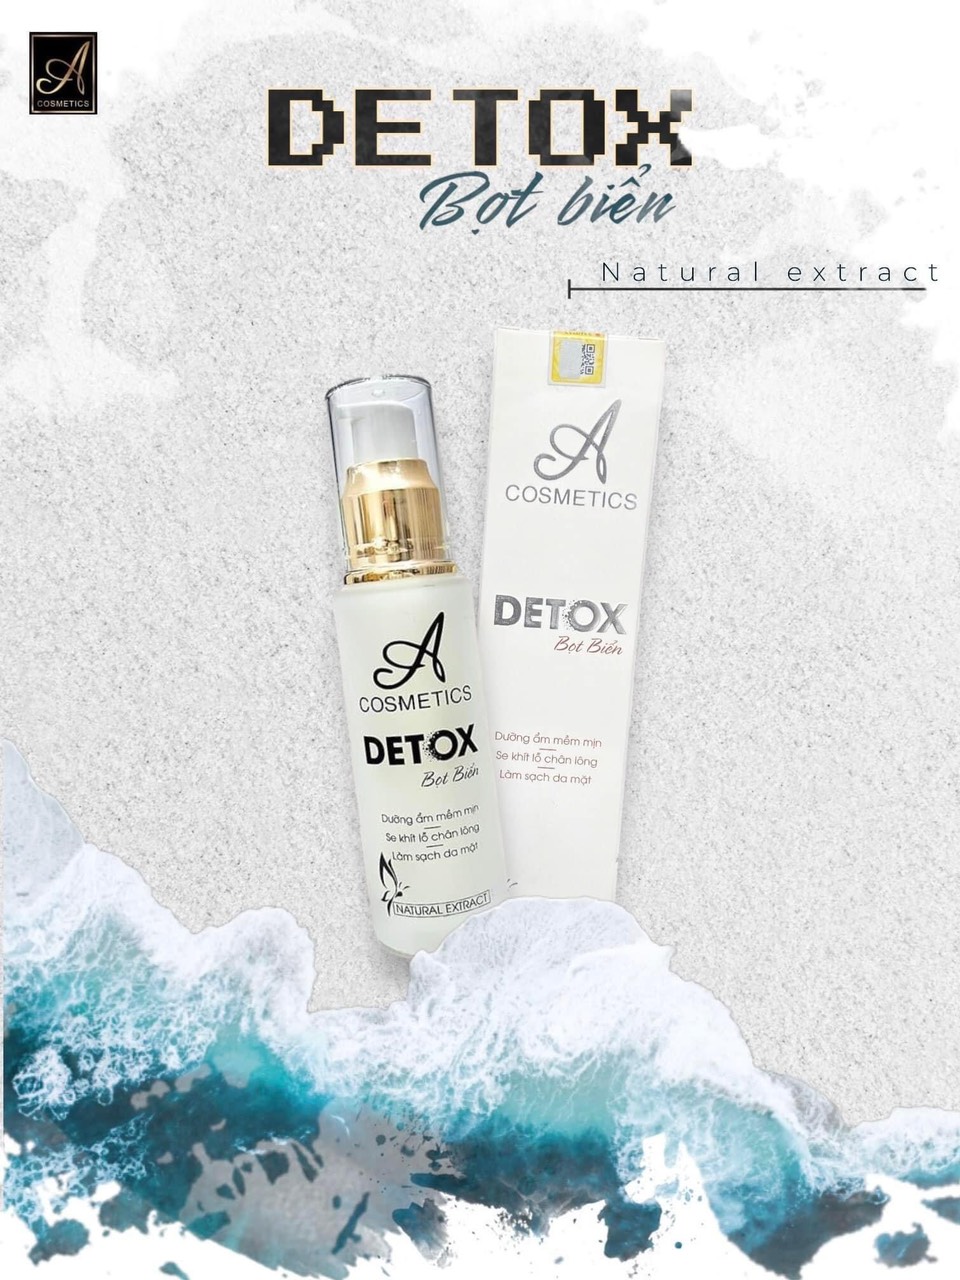 Detox bọt biển giúp loại bỏ dầu thừa, bụi bẩn và tạp chất tích tụ sâu trong lỗ chân lông, làm cho da trở nên sáng bóng và sạch sẽ hơn.